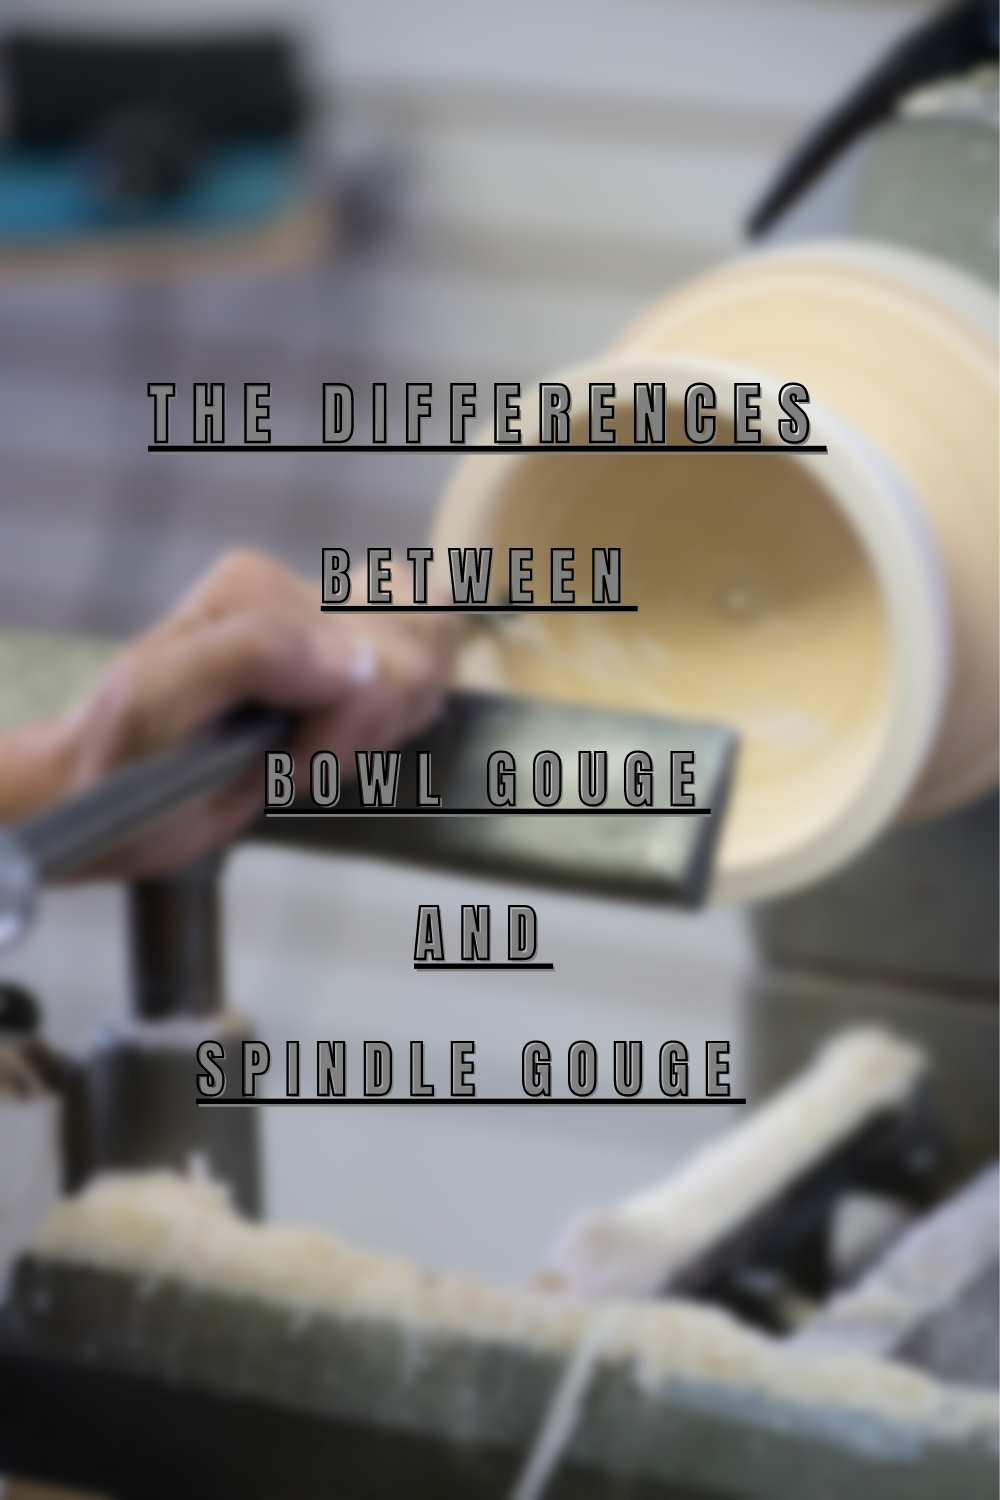 40-40 Bowl Gouge Grind (Shape, Sharpen, Use) - Turn A Wood Bowl